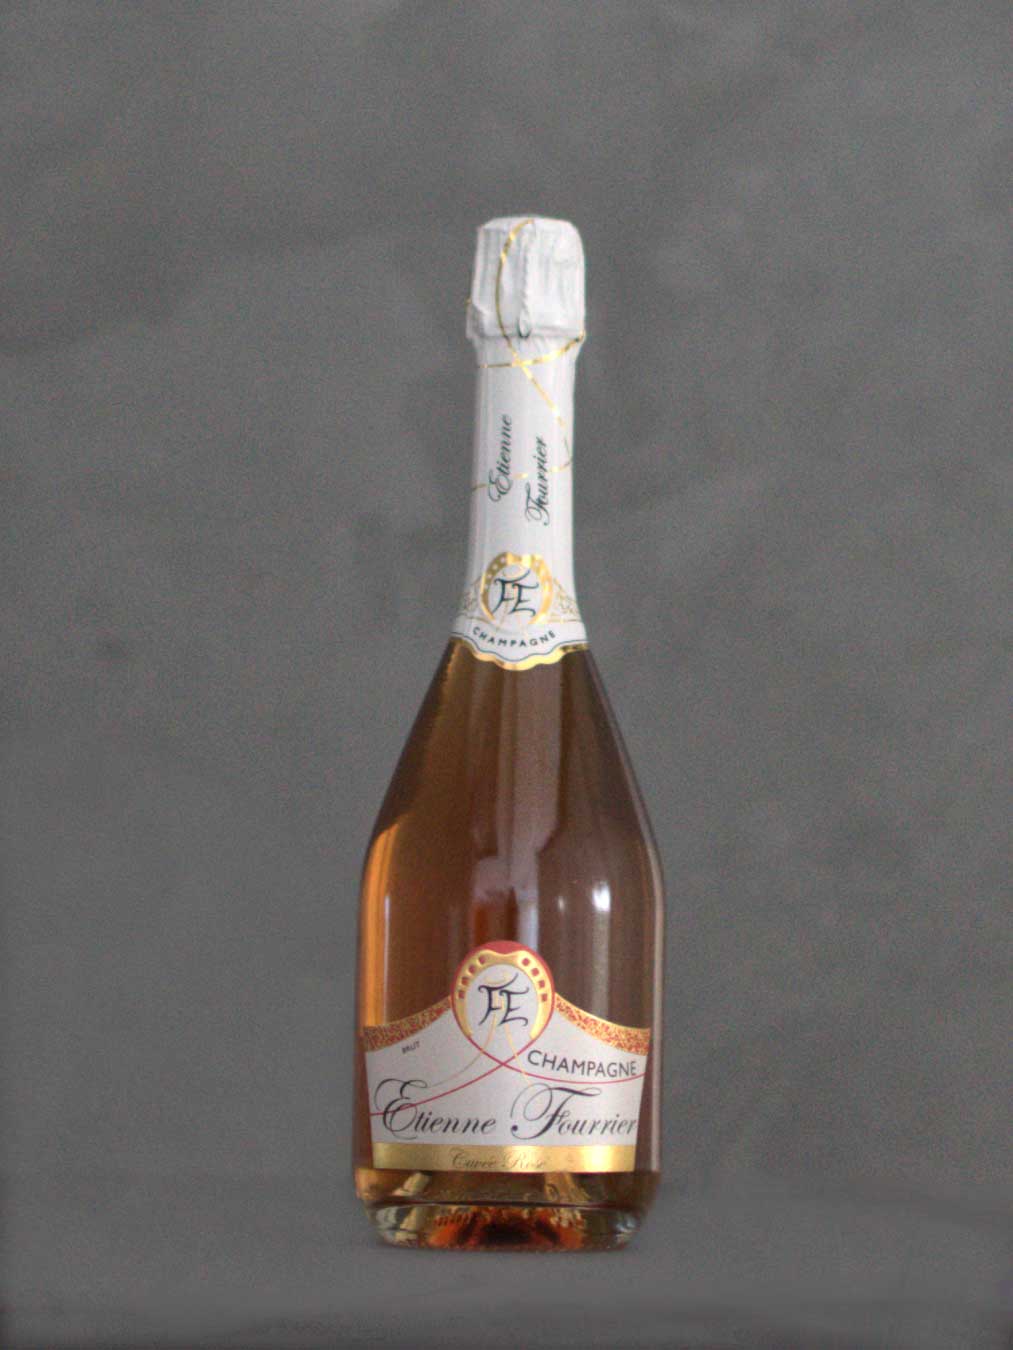 Bouchon de champagne - Champagne etienne fourrier